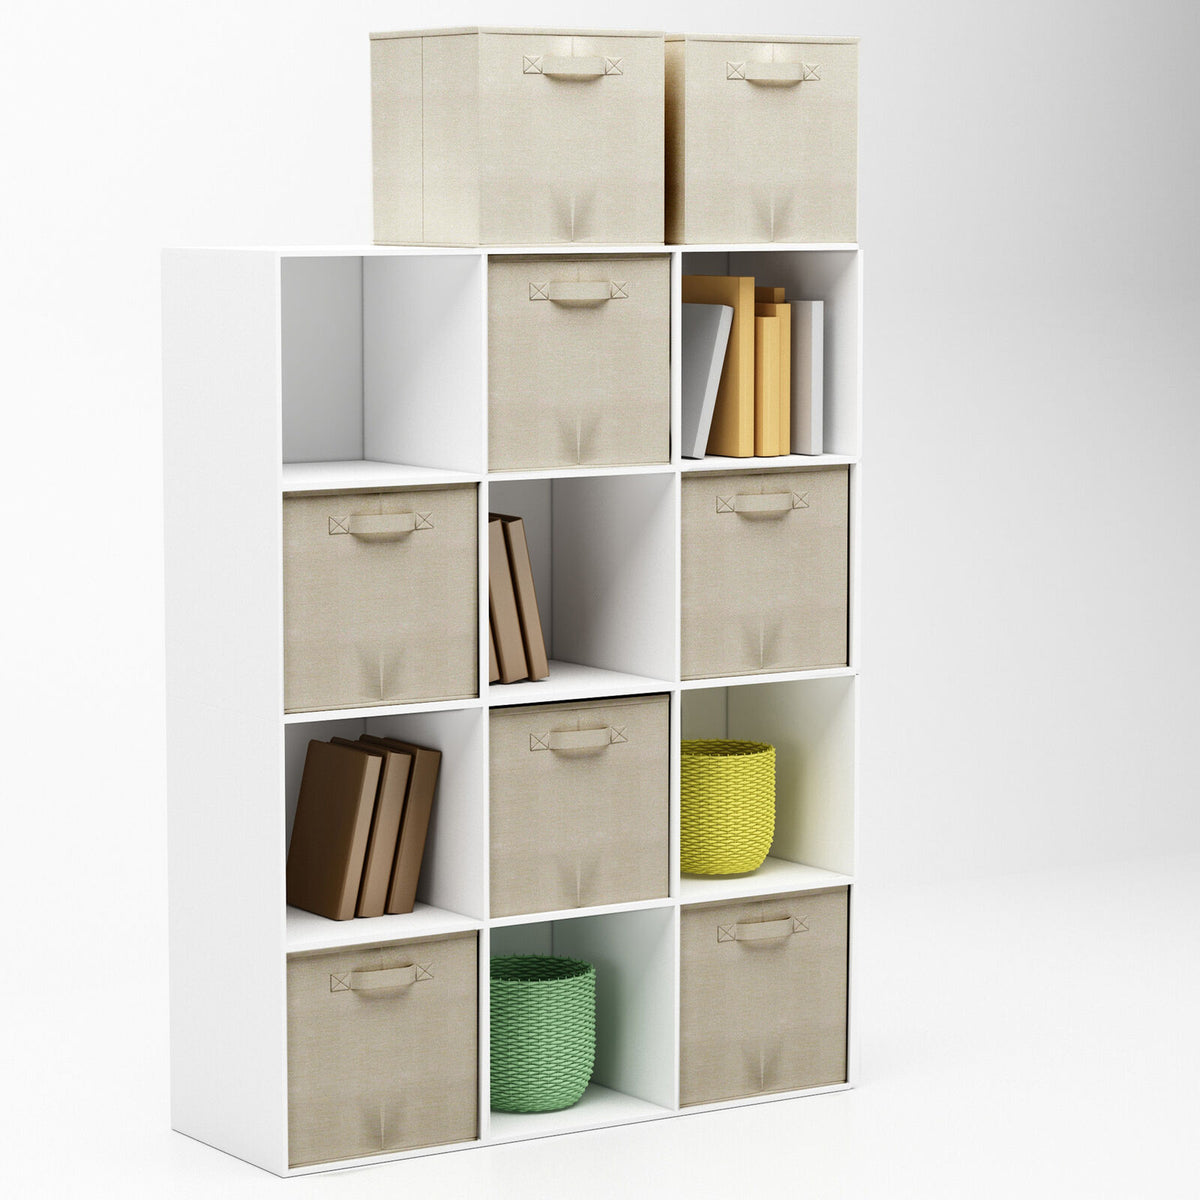 8-Piece Foldable Storage Cubes Set for Shelves